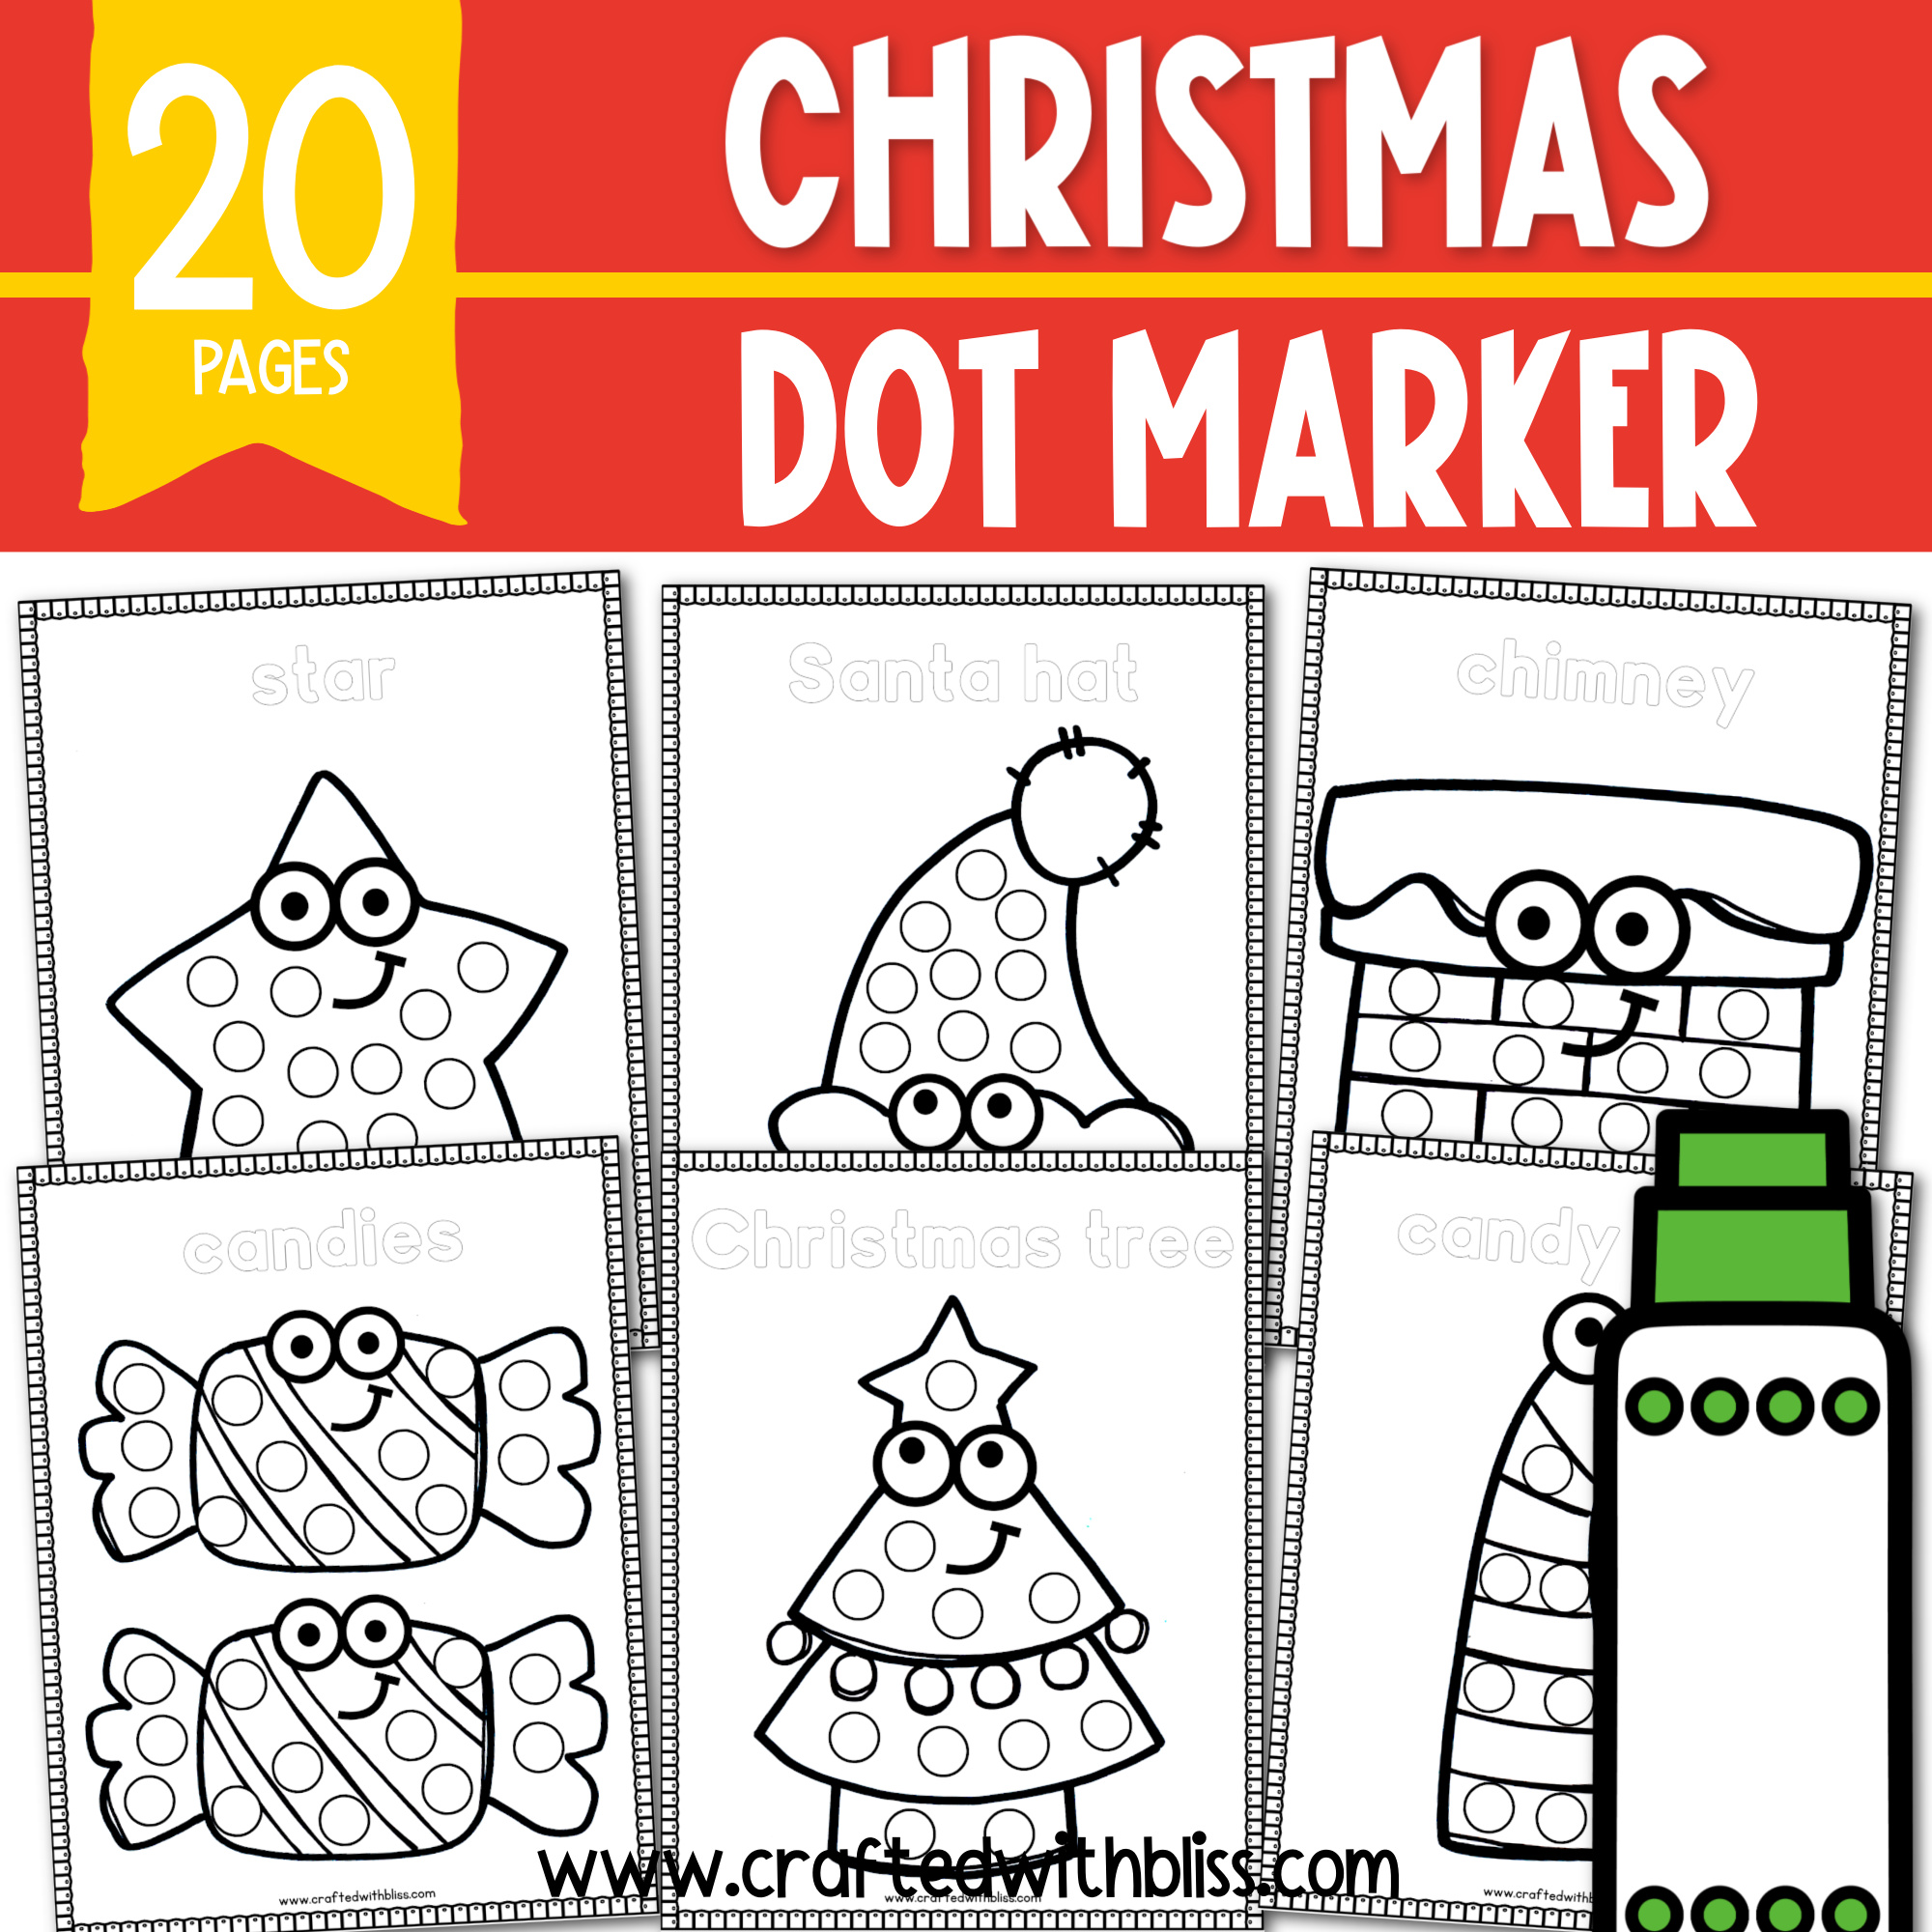 Dot Marker Printables (For Toddlers and Older Children!) - Printable Parents